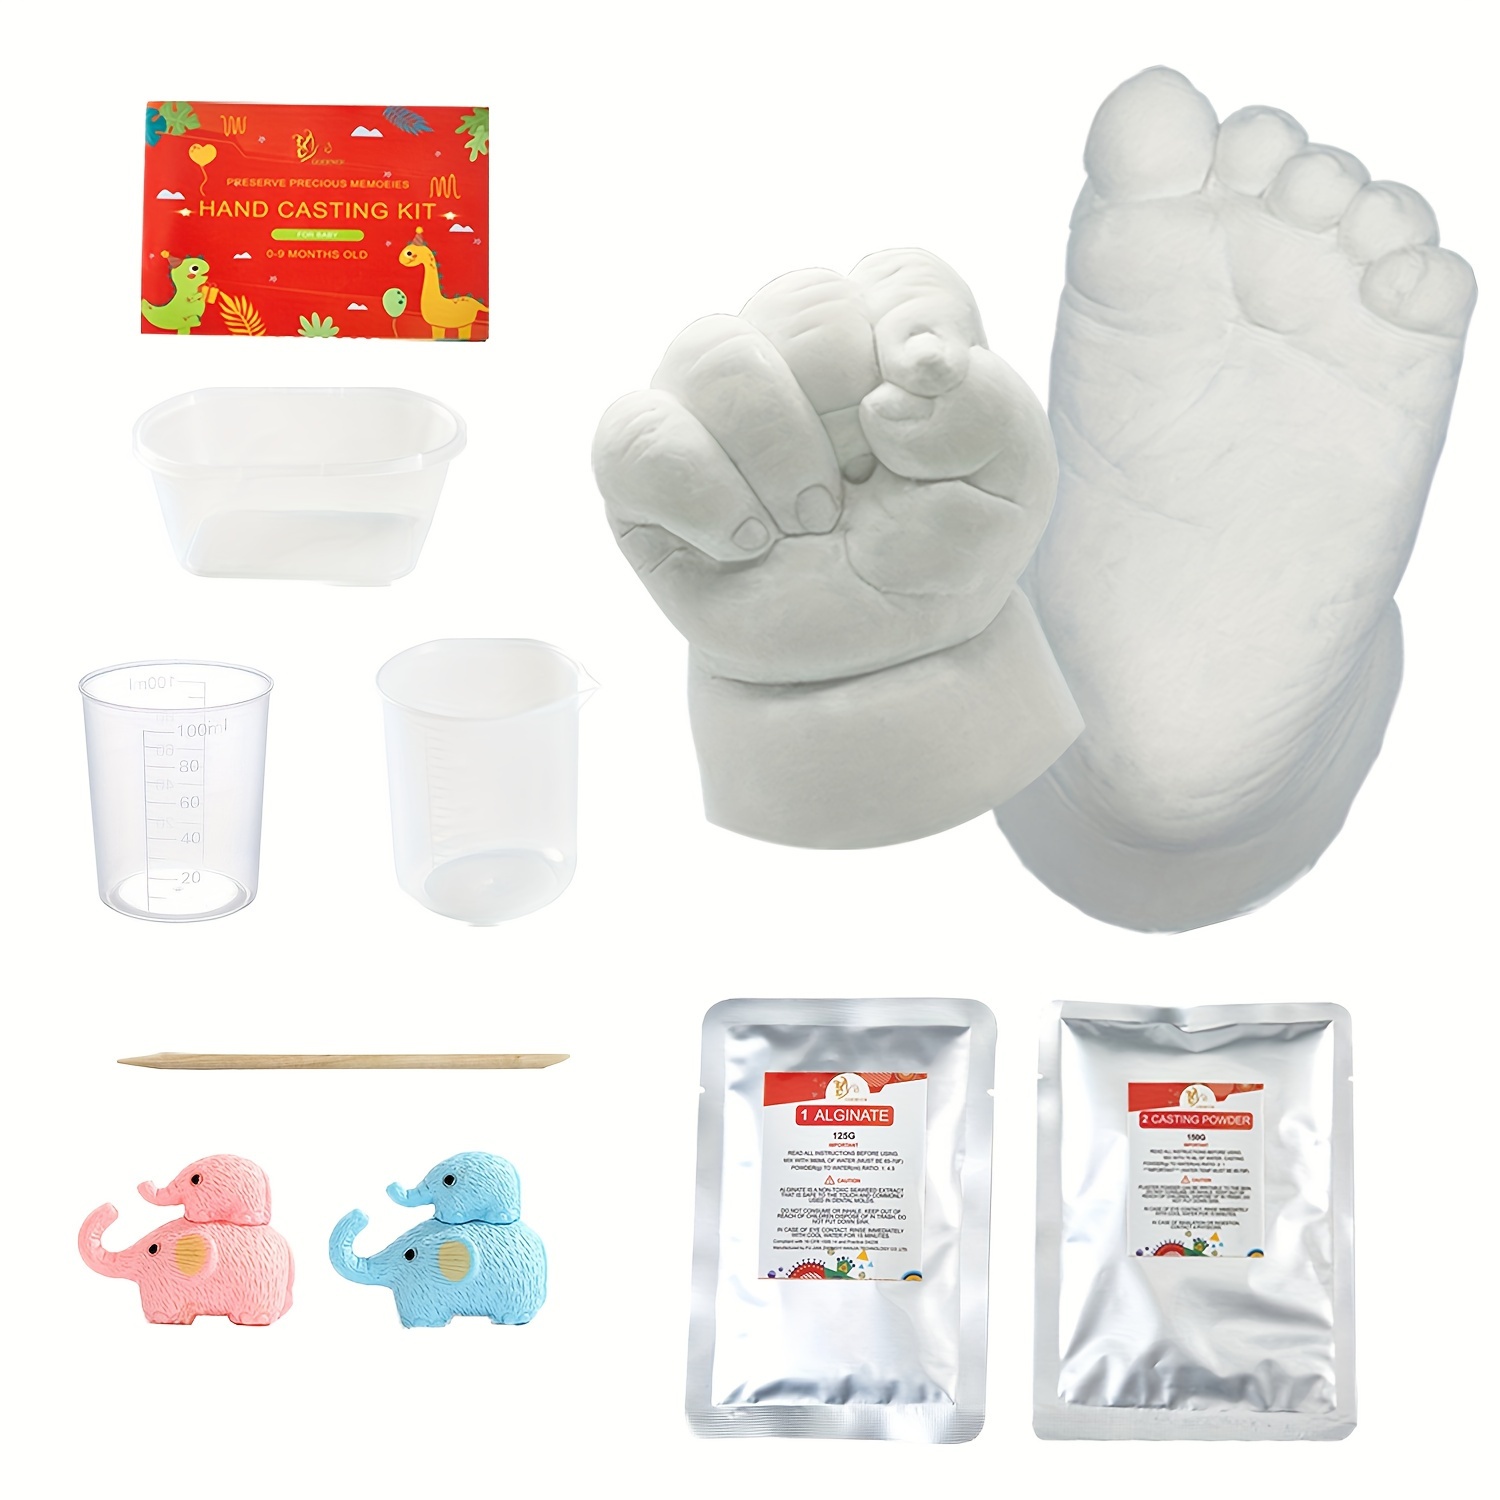 Baby Keepsake Hands Casting Kit  Plaster Hand Molding Kit For